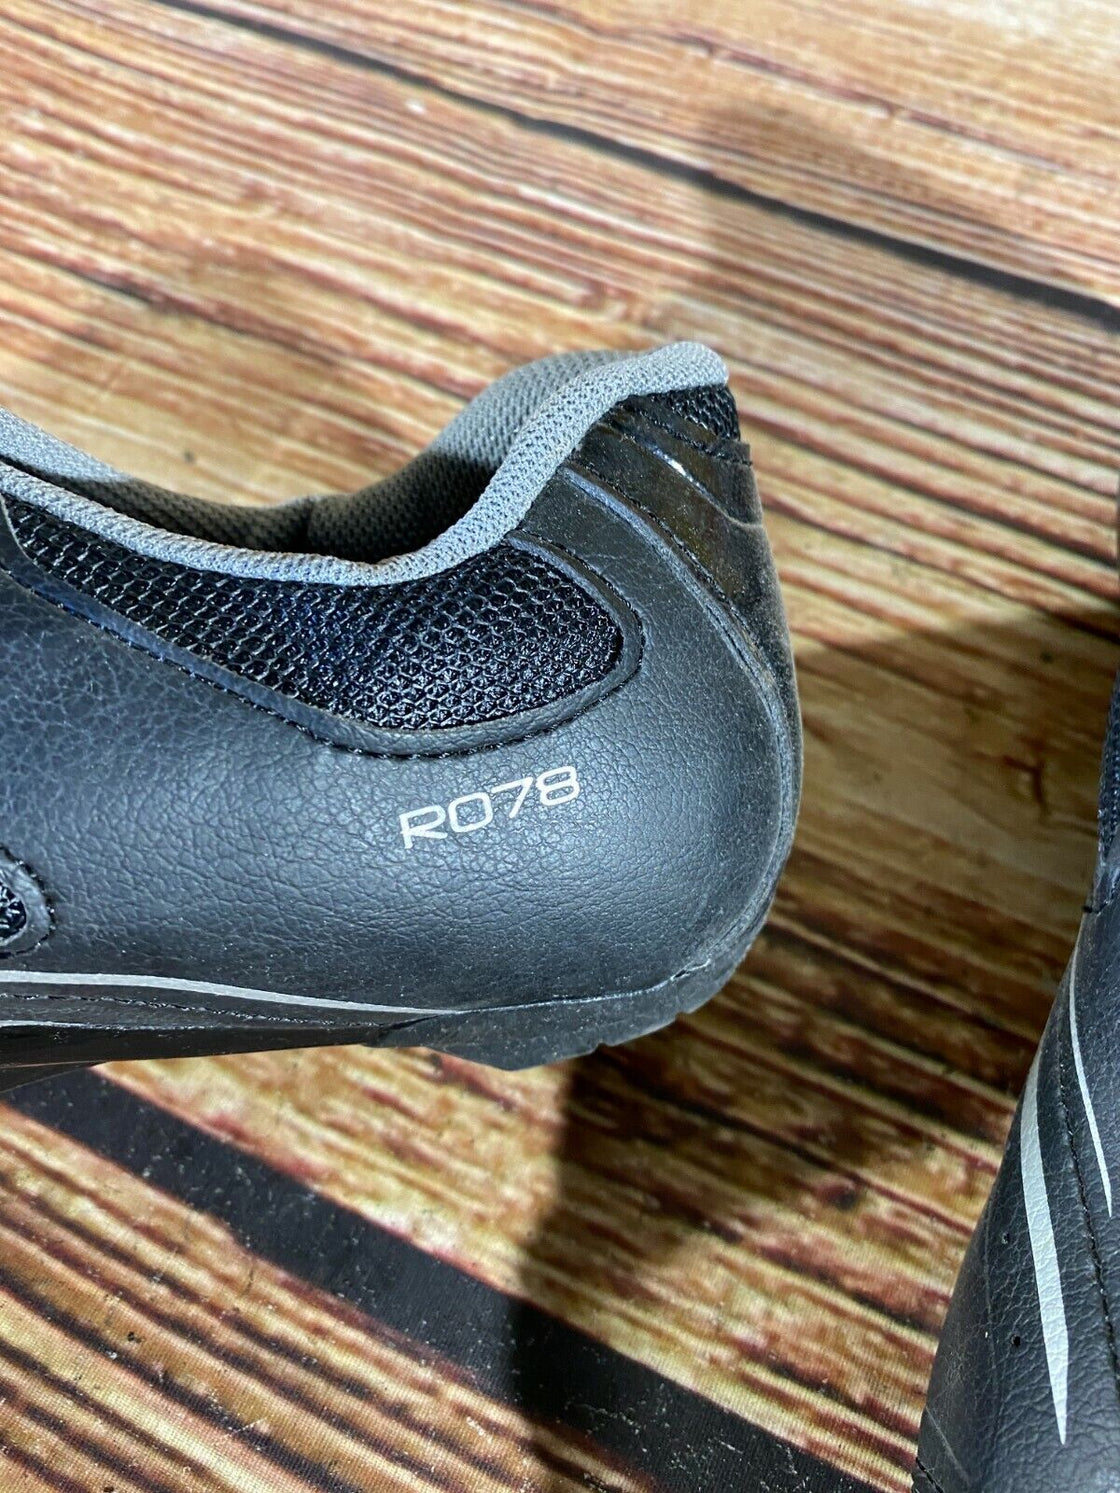 SHIMANO R078 Road Cycling Shoes Biking Boots 3 Bolts Size EU41, US7.6